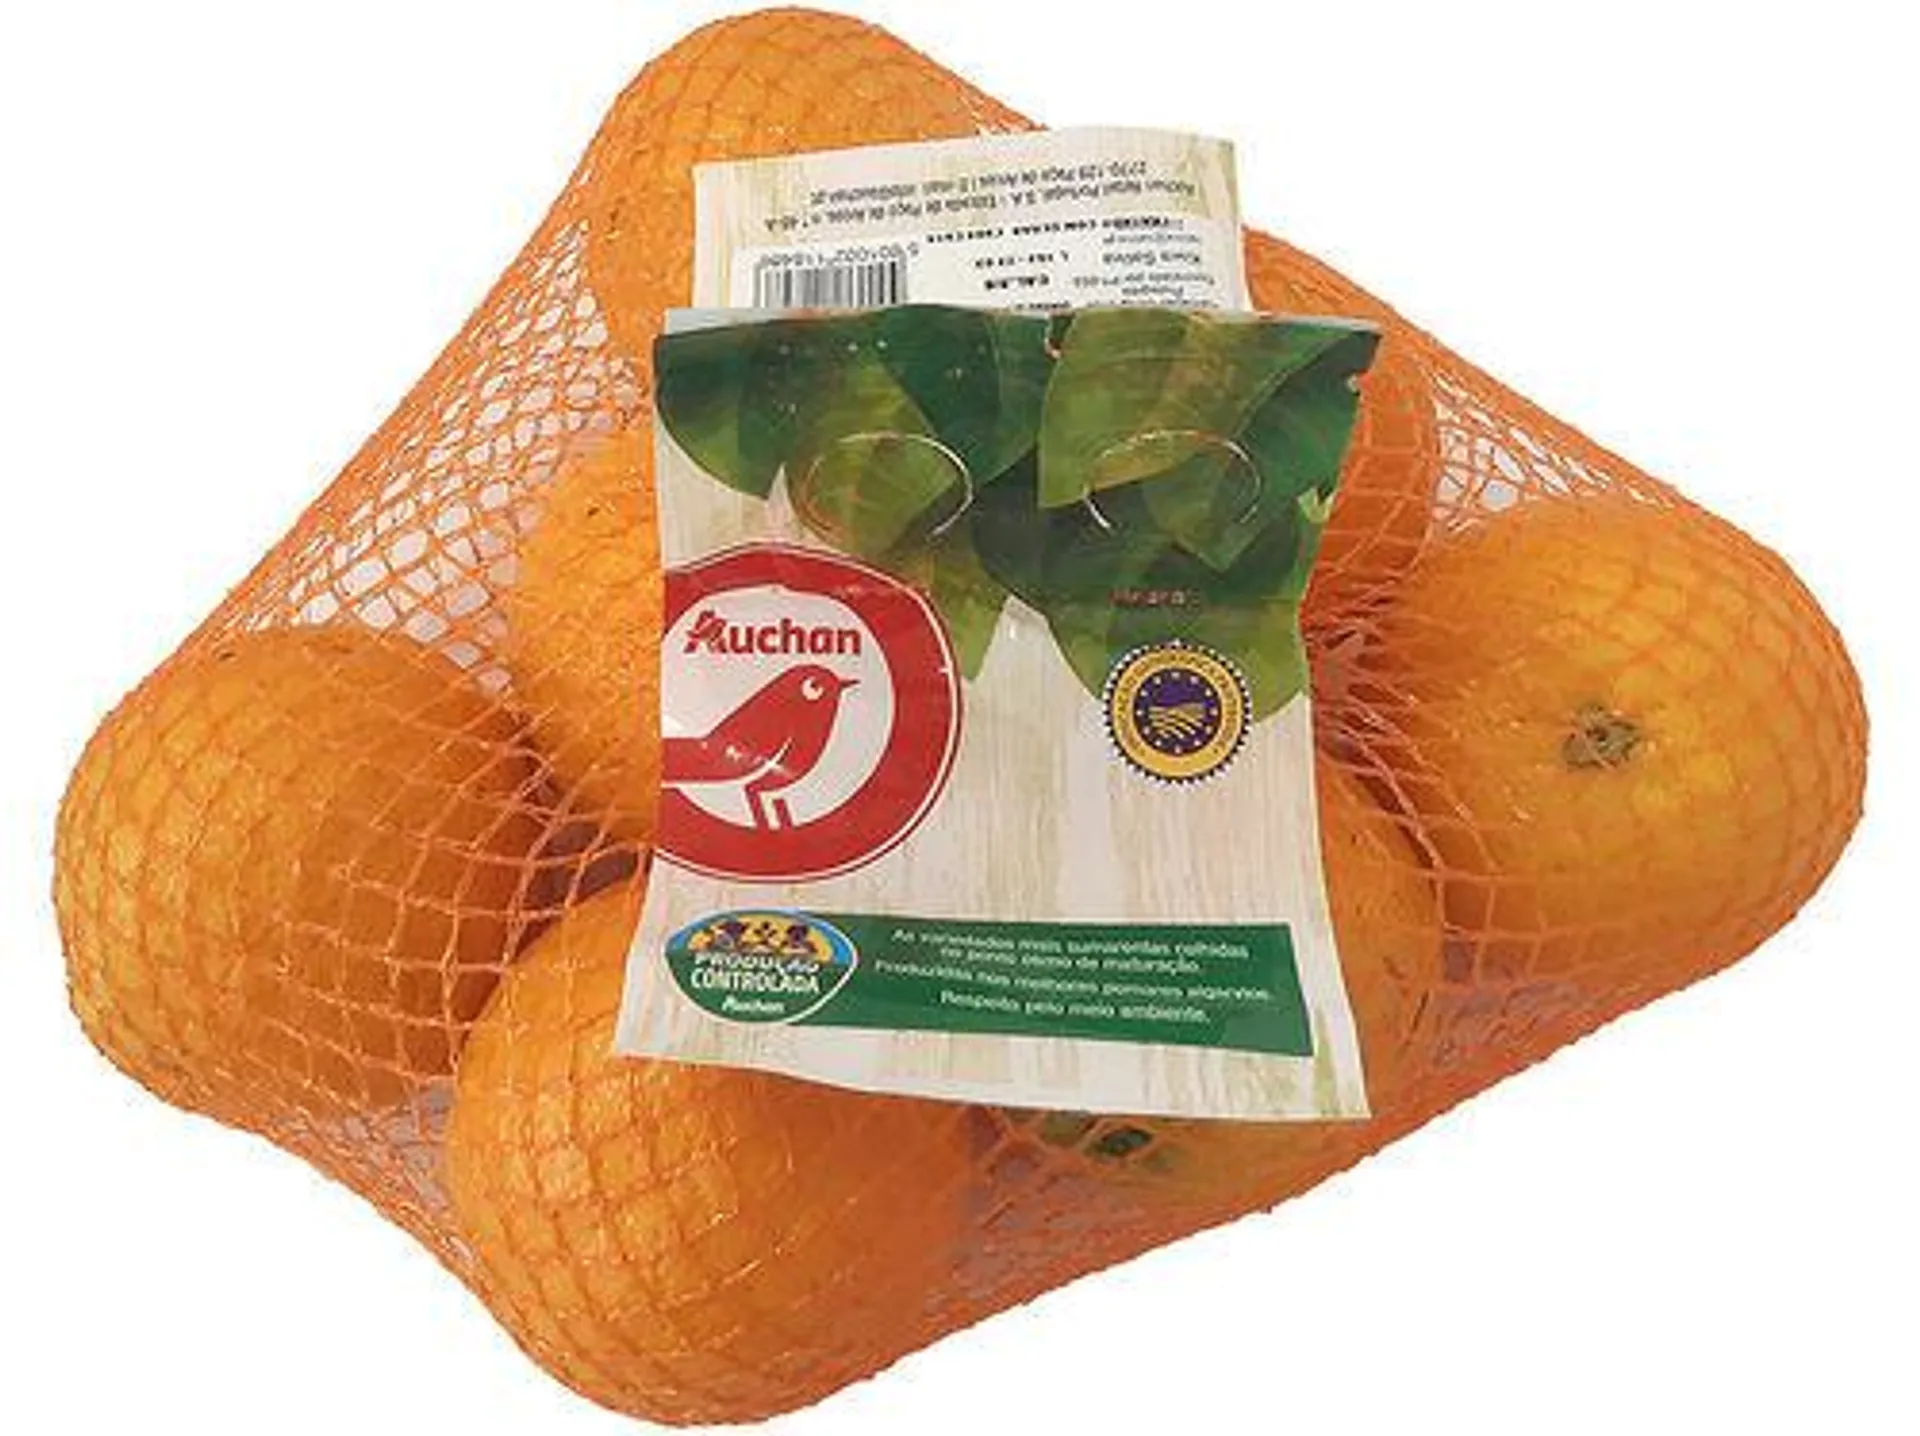 laranja do algarve igp auchan produção controlada 1.5 kg